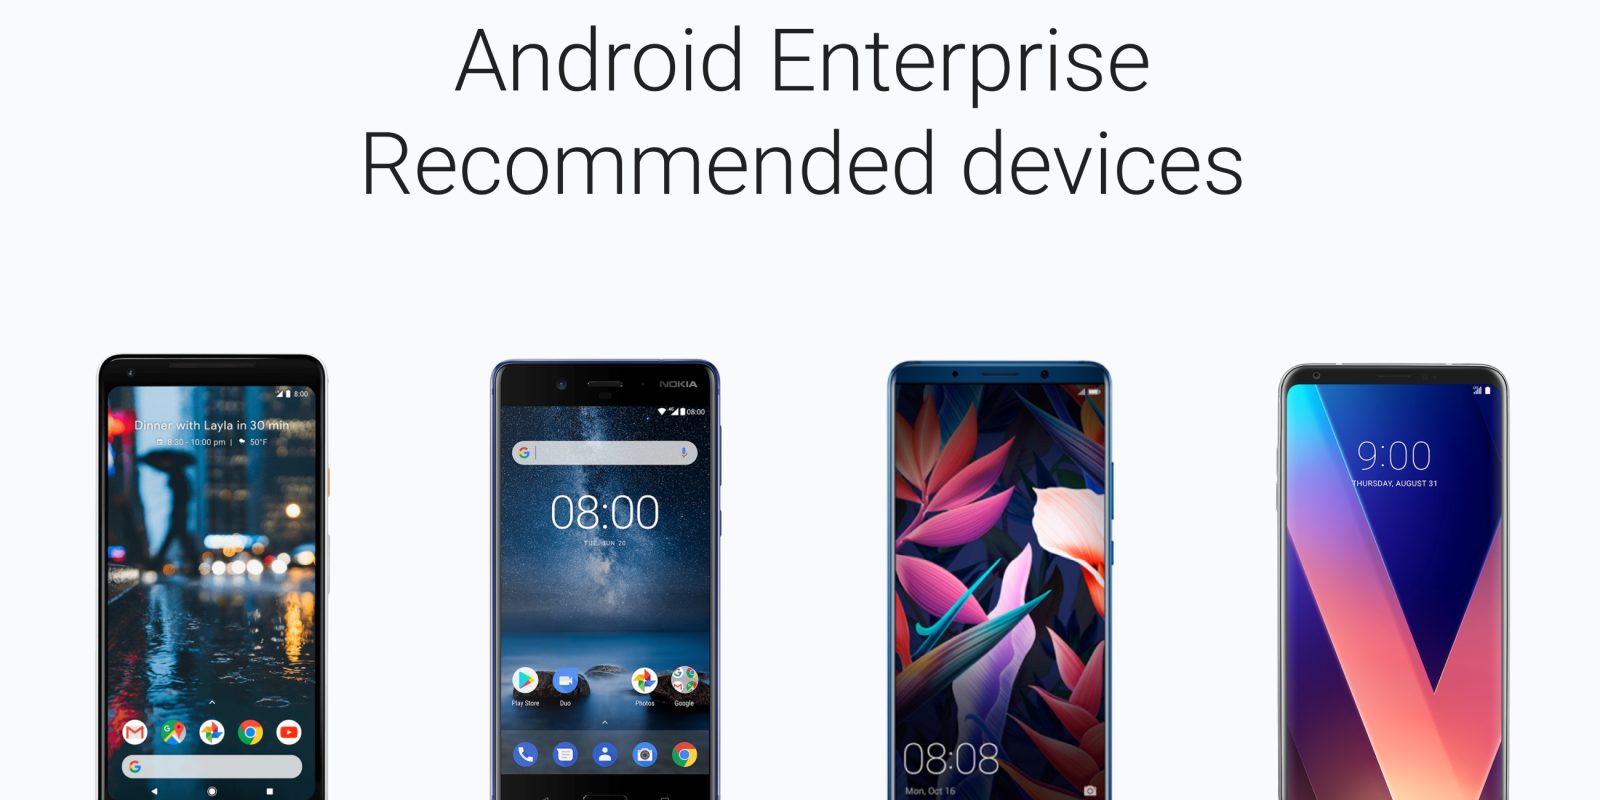 Kurumlara Önerilen Android